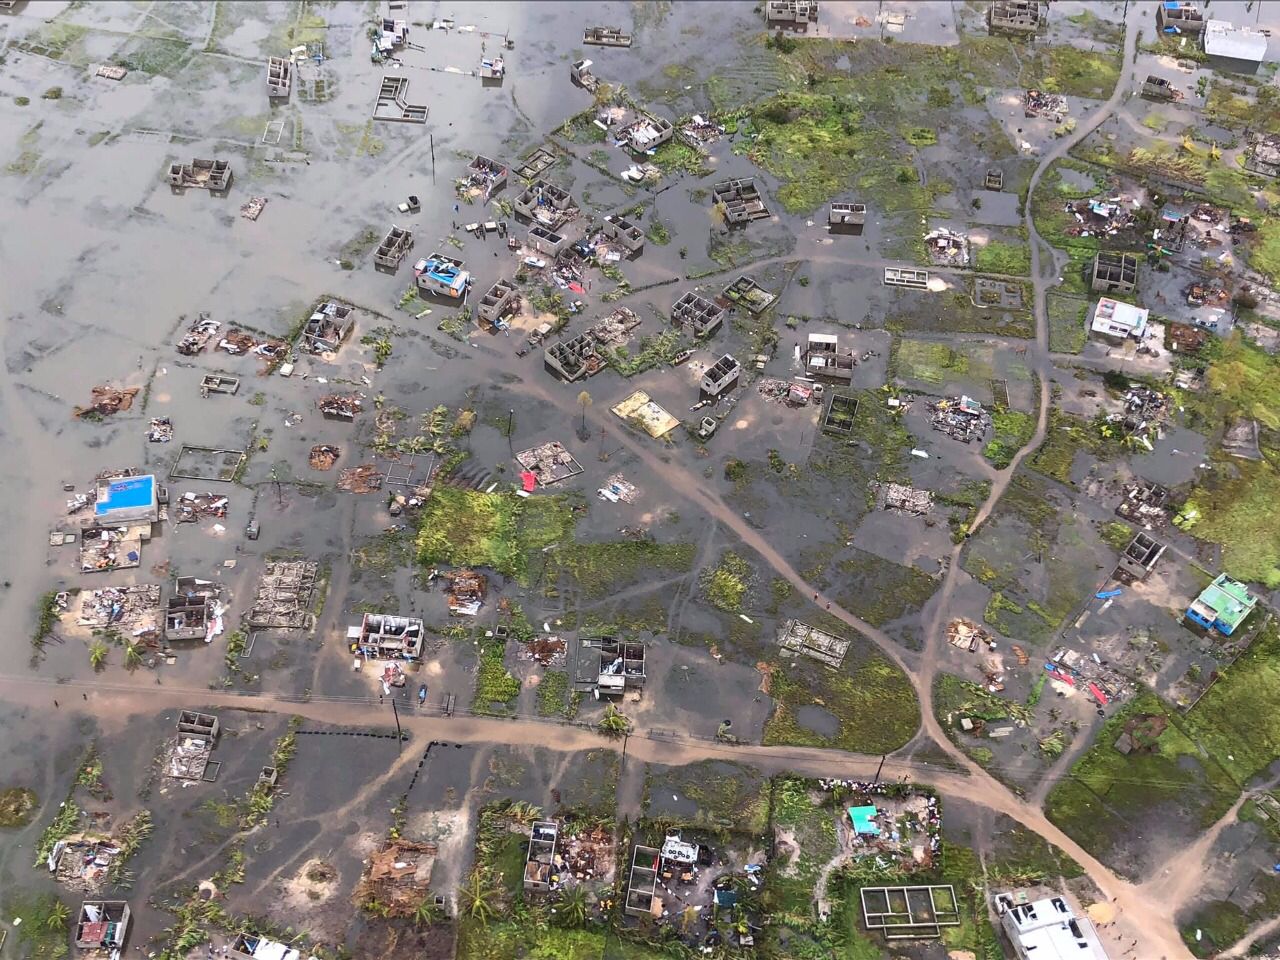  莫桑比克貝拉辦事處遭颶風重創受災      公司上下積極有序應對開展災后自救